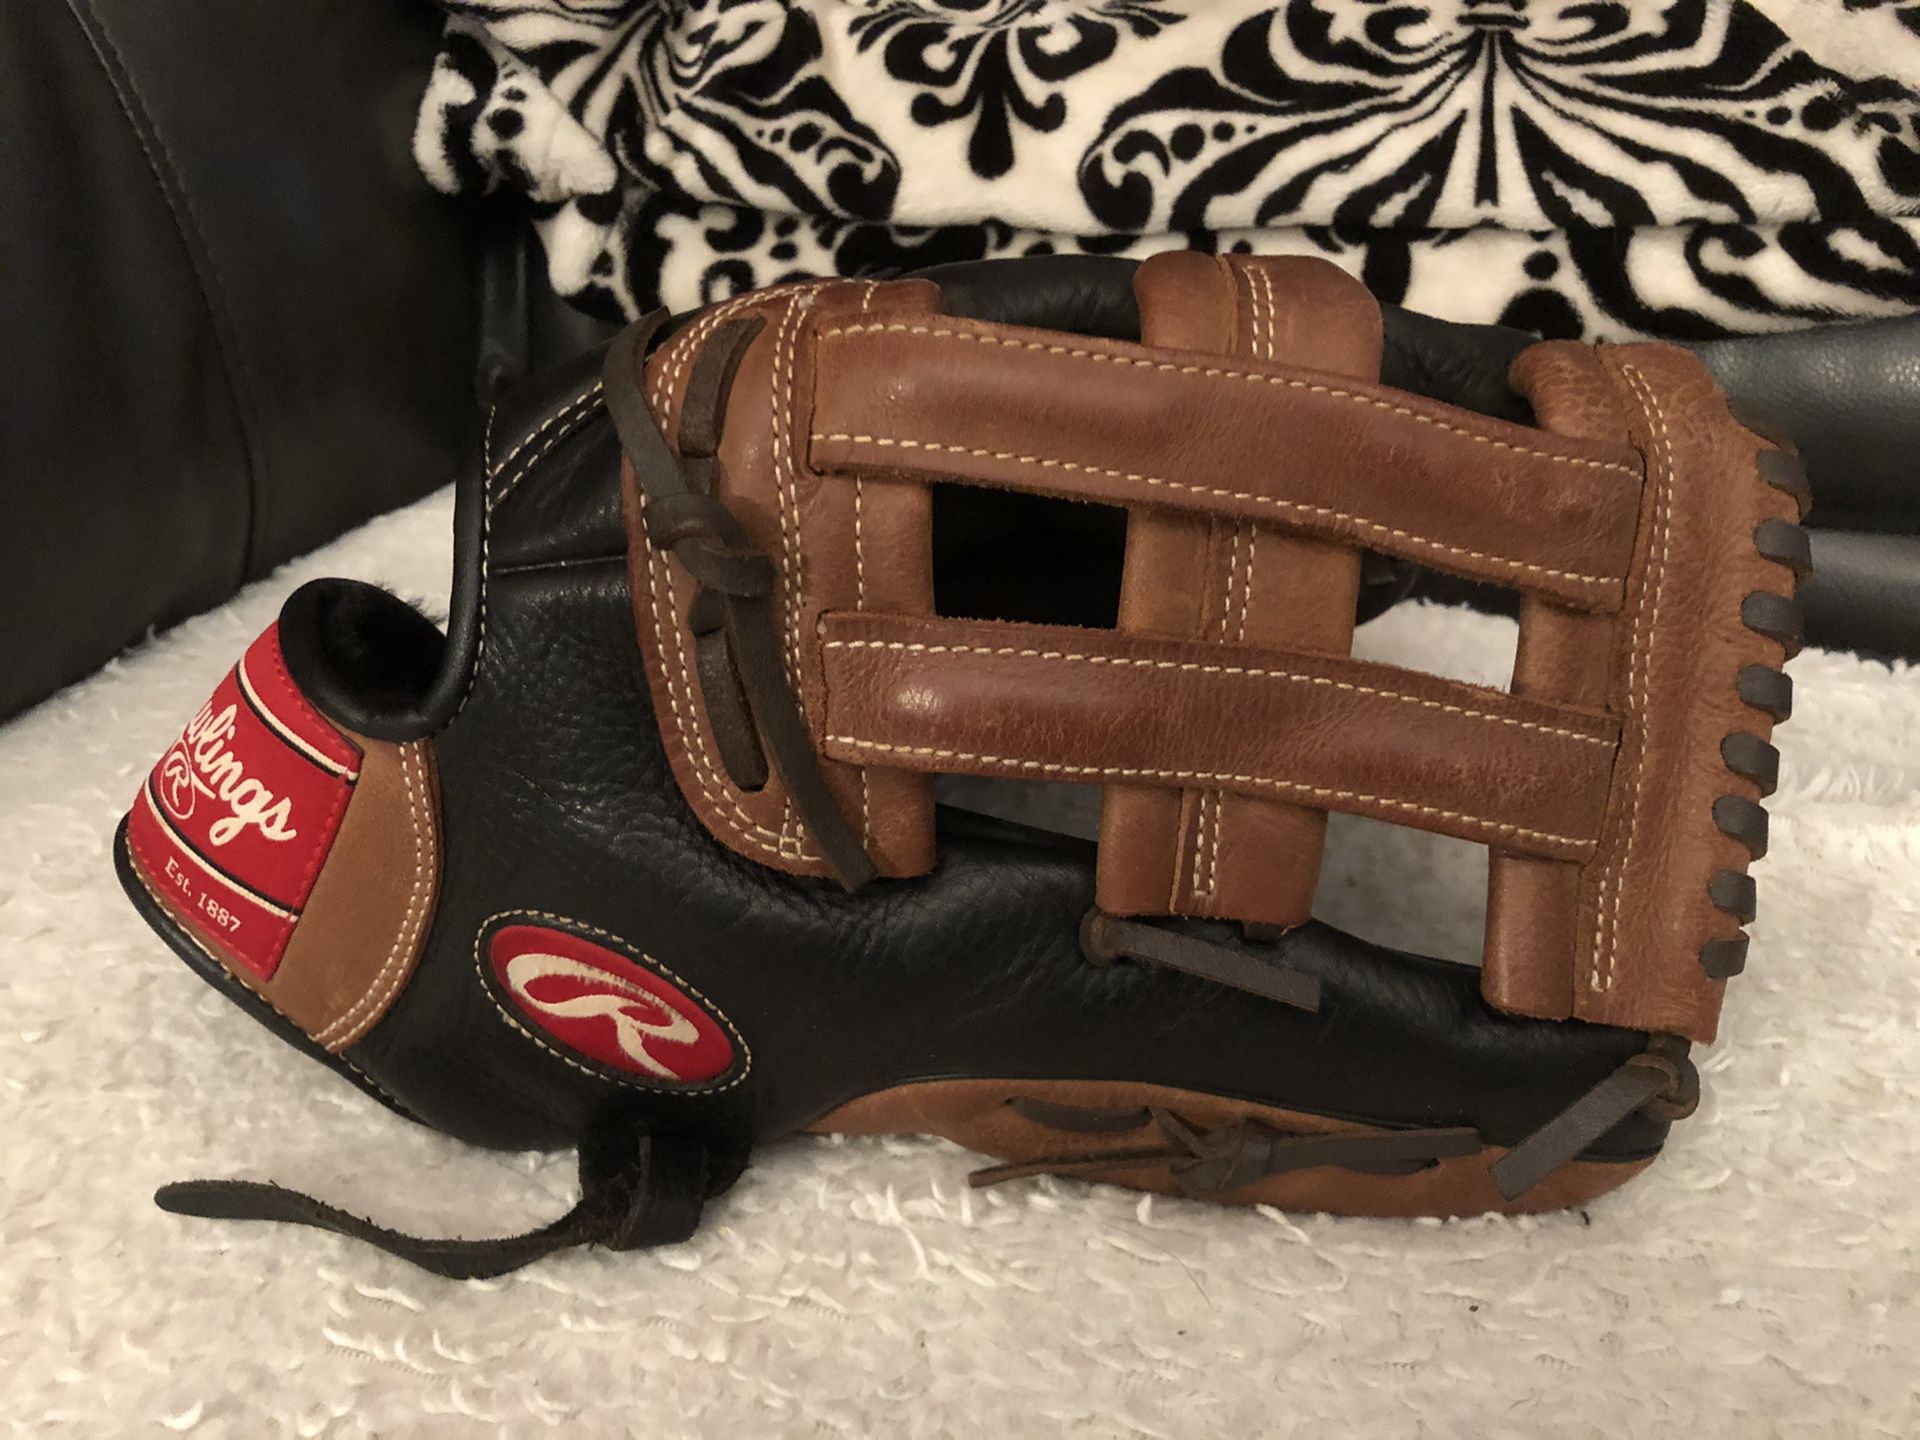 Rawlings Premium Series 12.75” glove